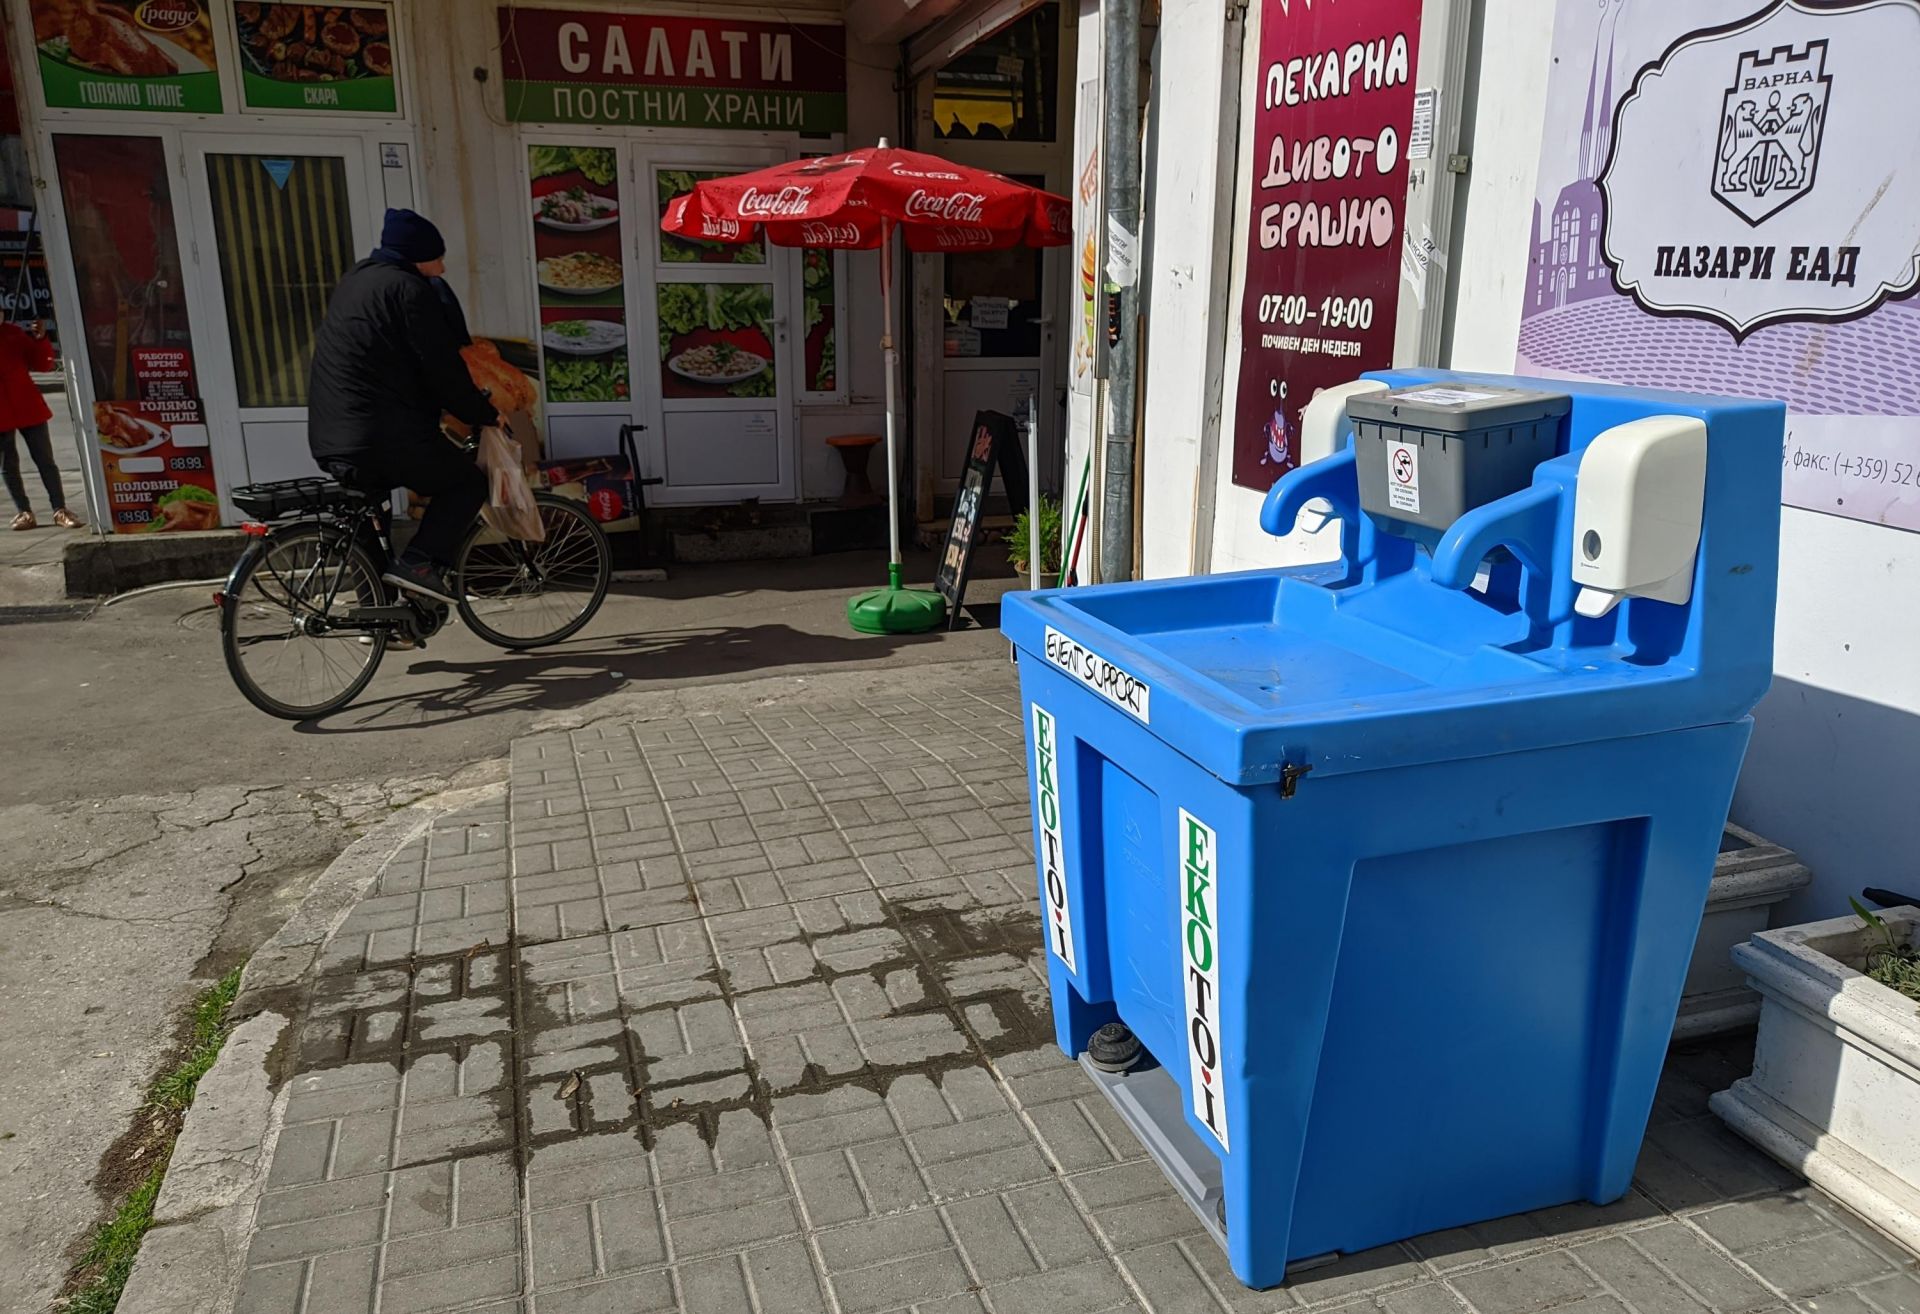 Мобилни чешми за миене и дезинфекция на ръцете се поставят на обществени места във Варна, съобщиха от управата на града. Те са 20 на брой.